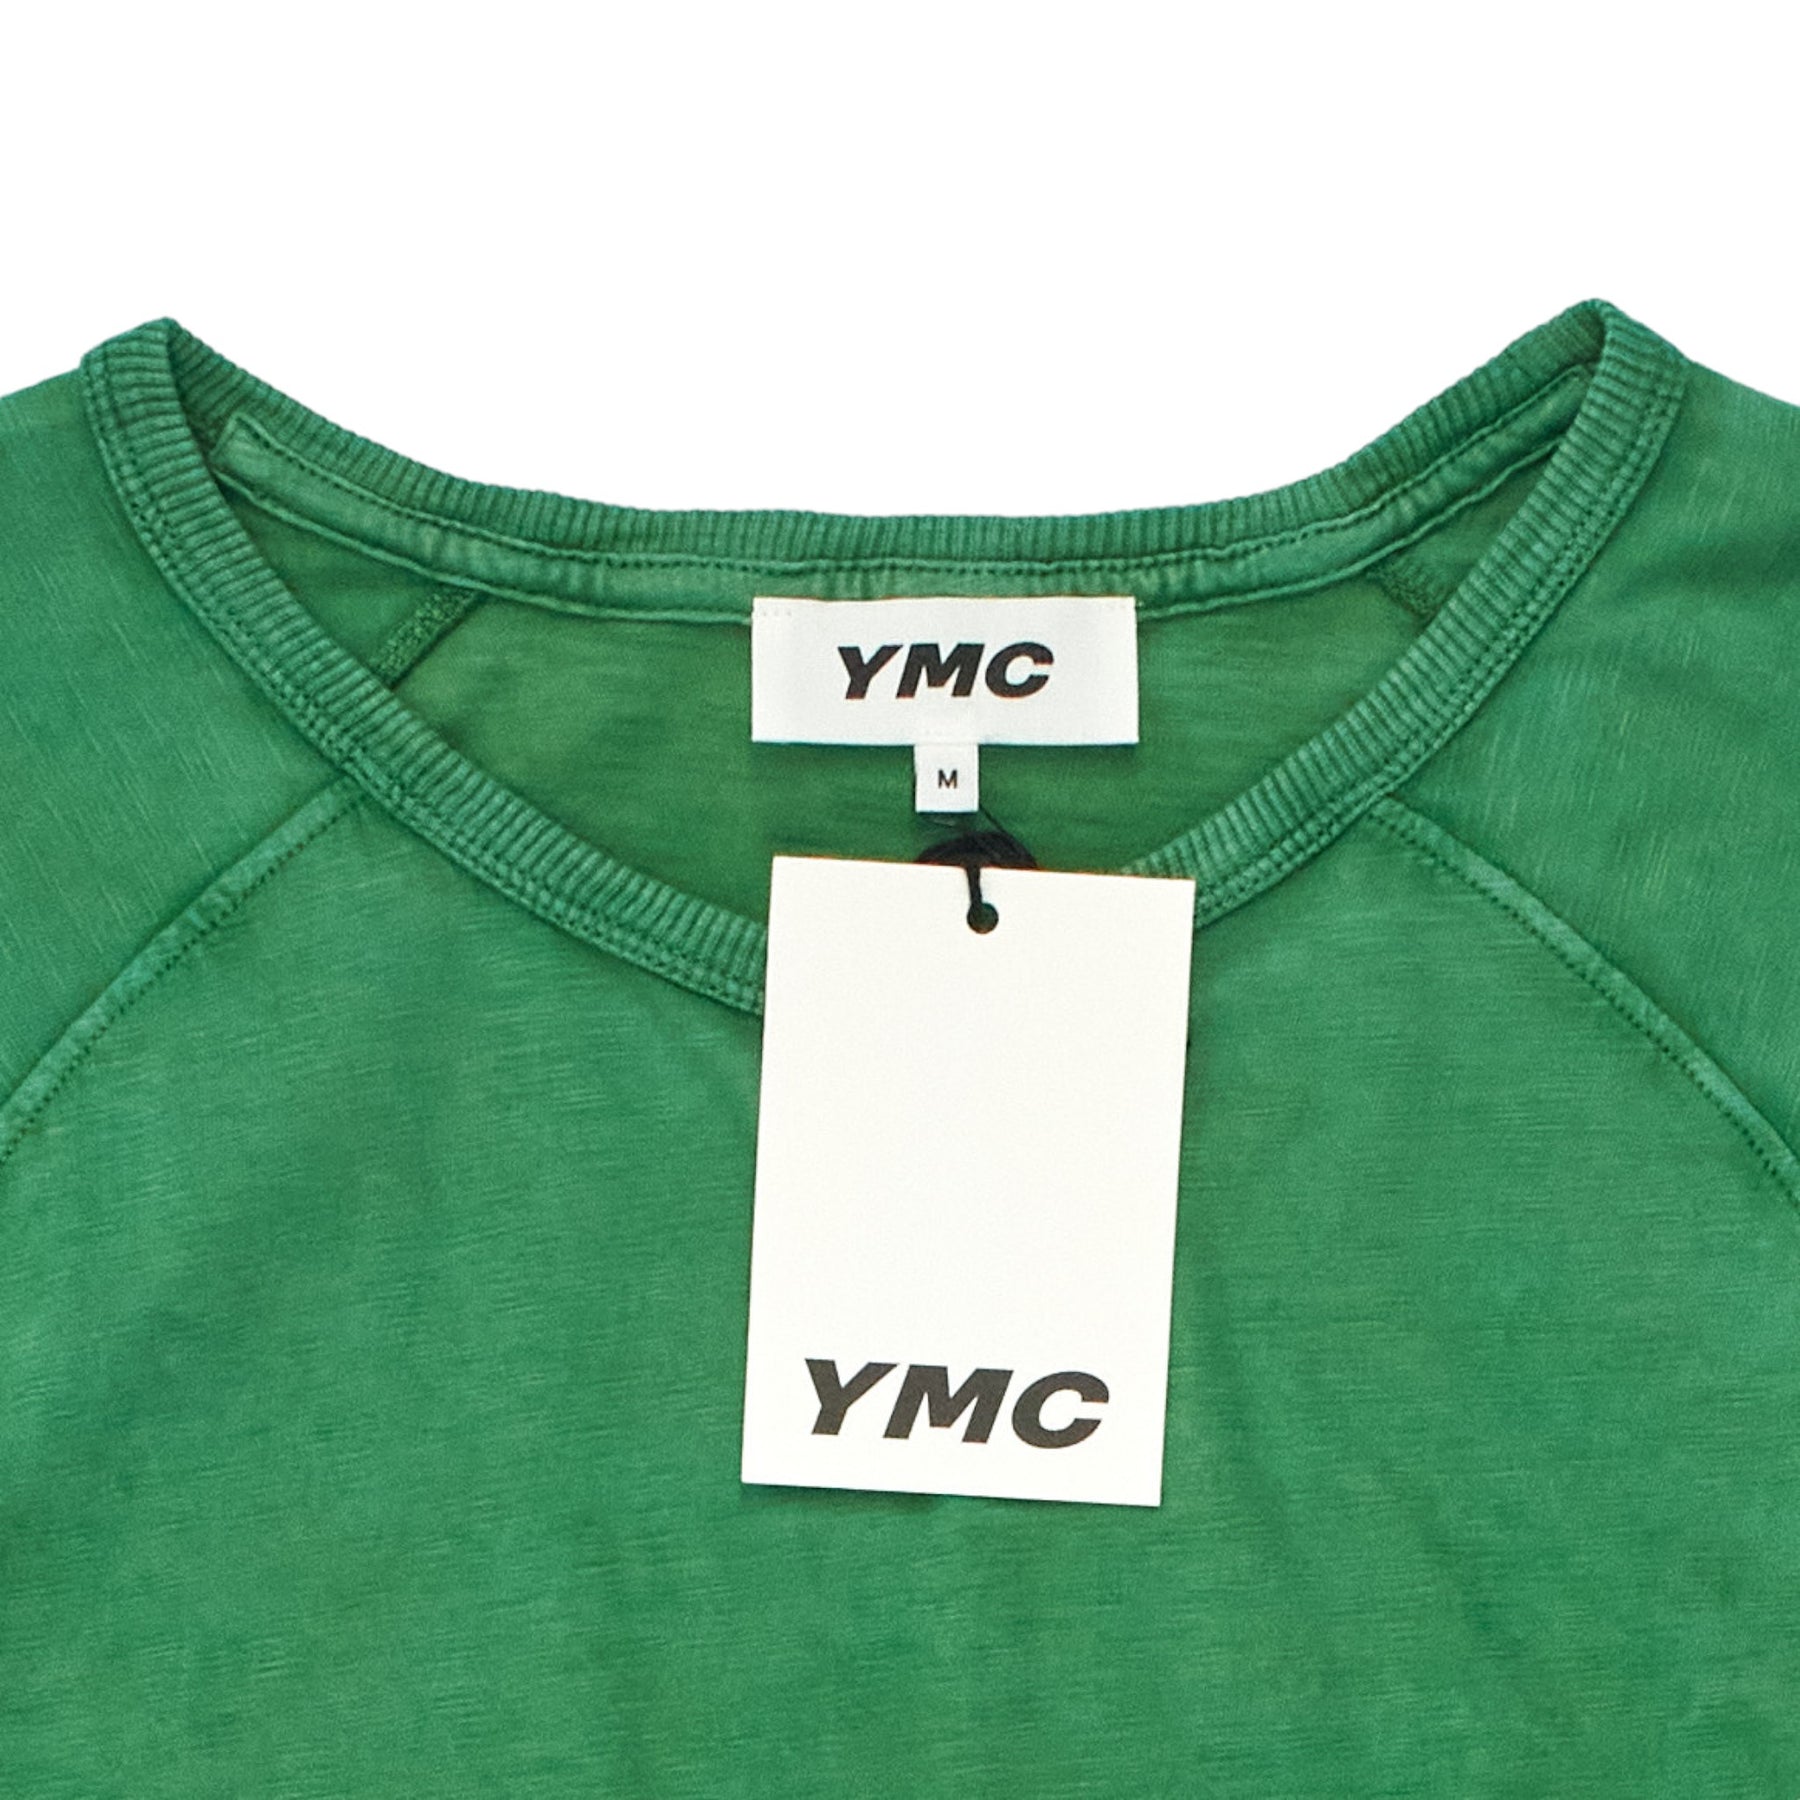 YMC Abundant Green T Shirt